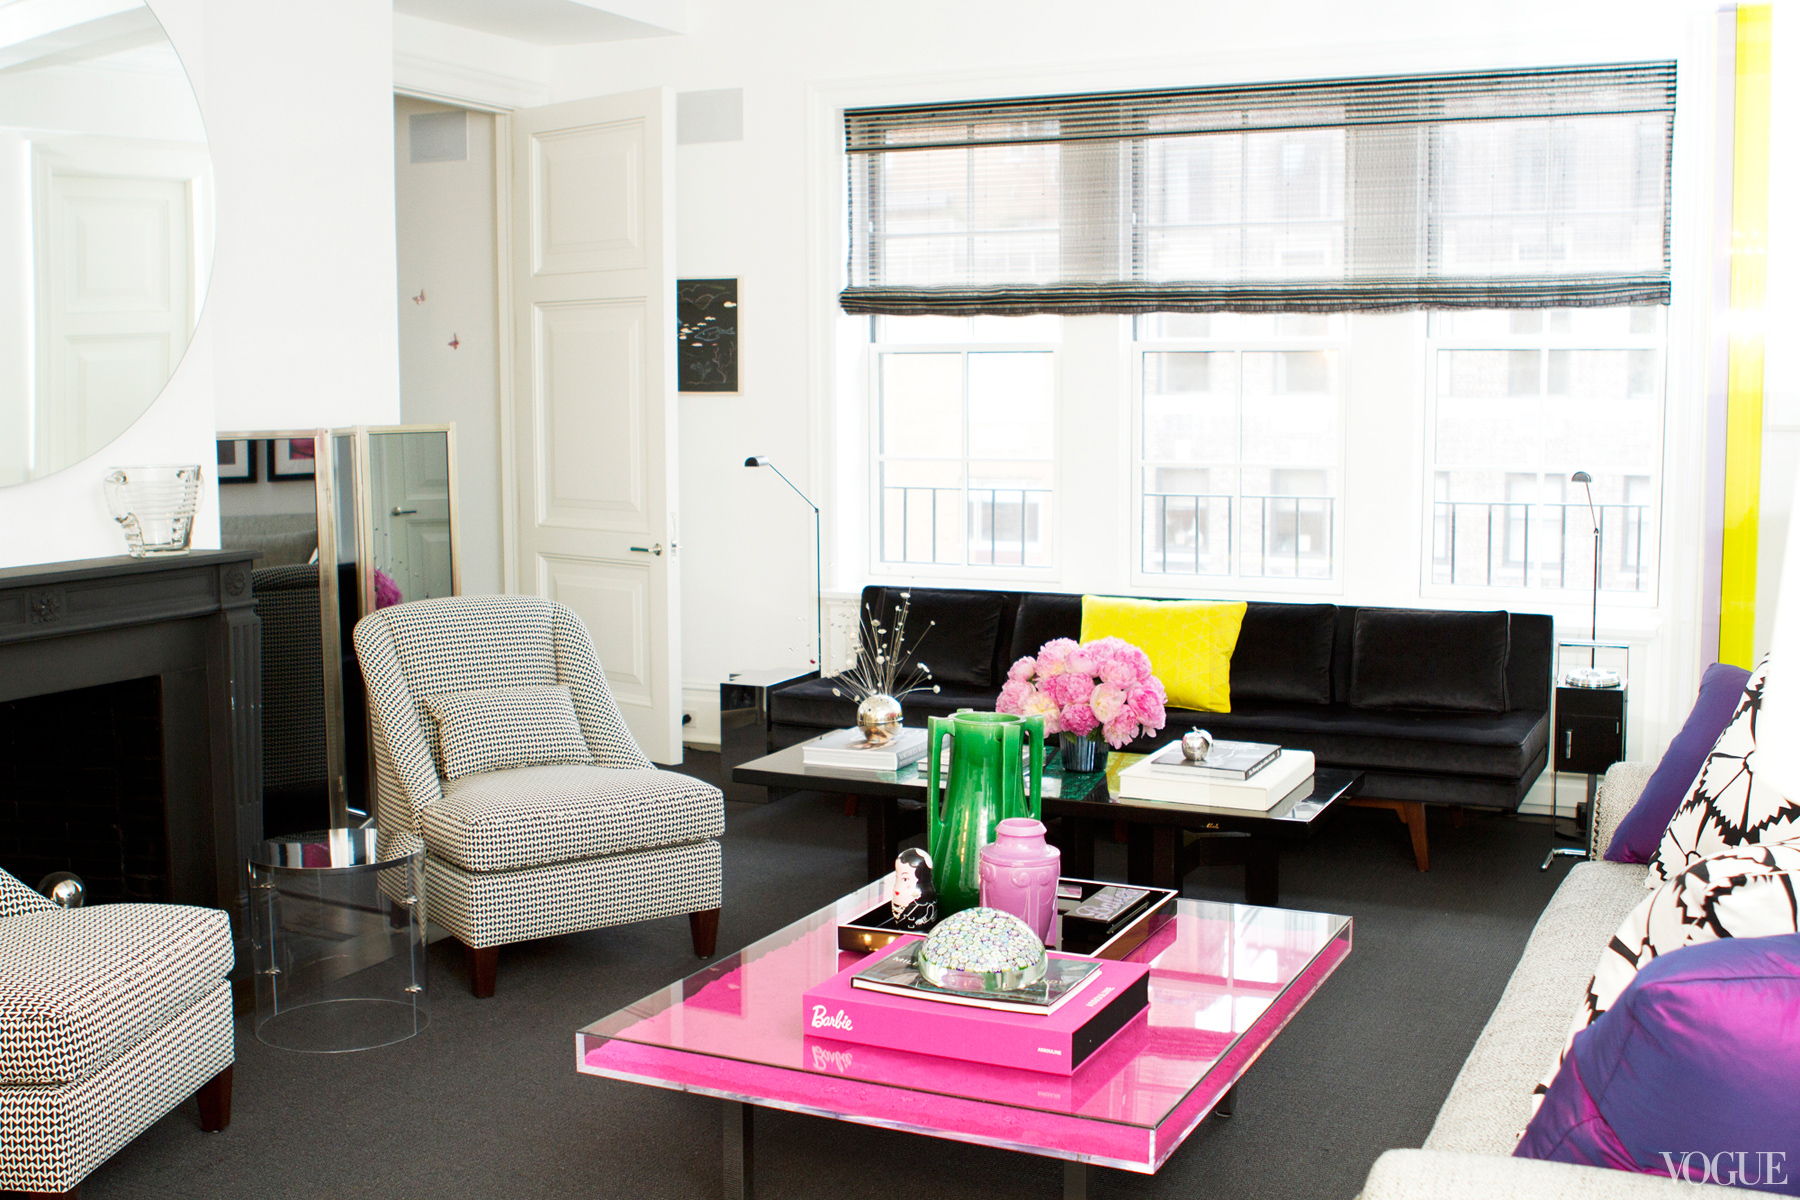  Upper East Side Living Room, Brett Heyman  2014  VOGUE.COM 